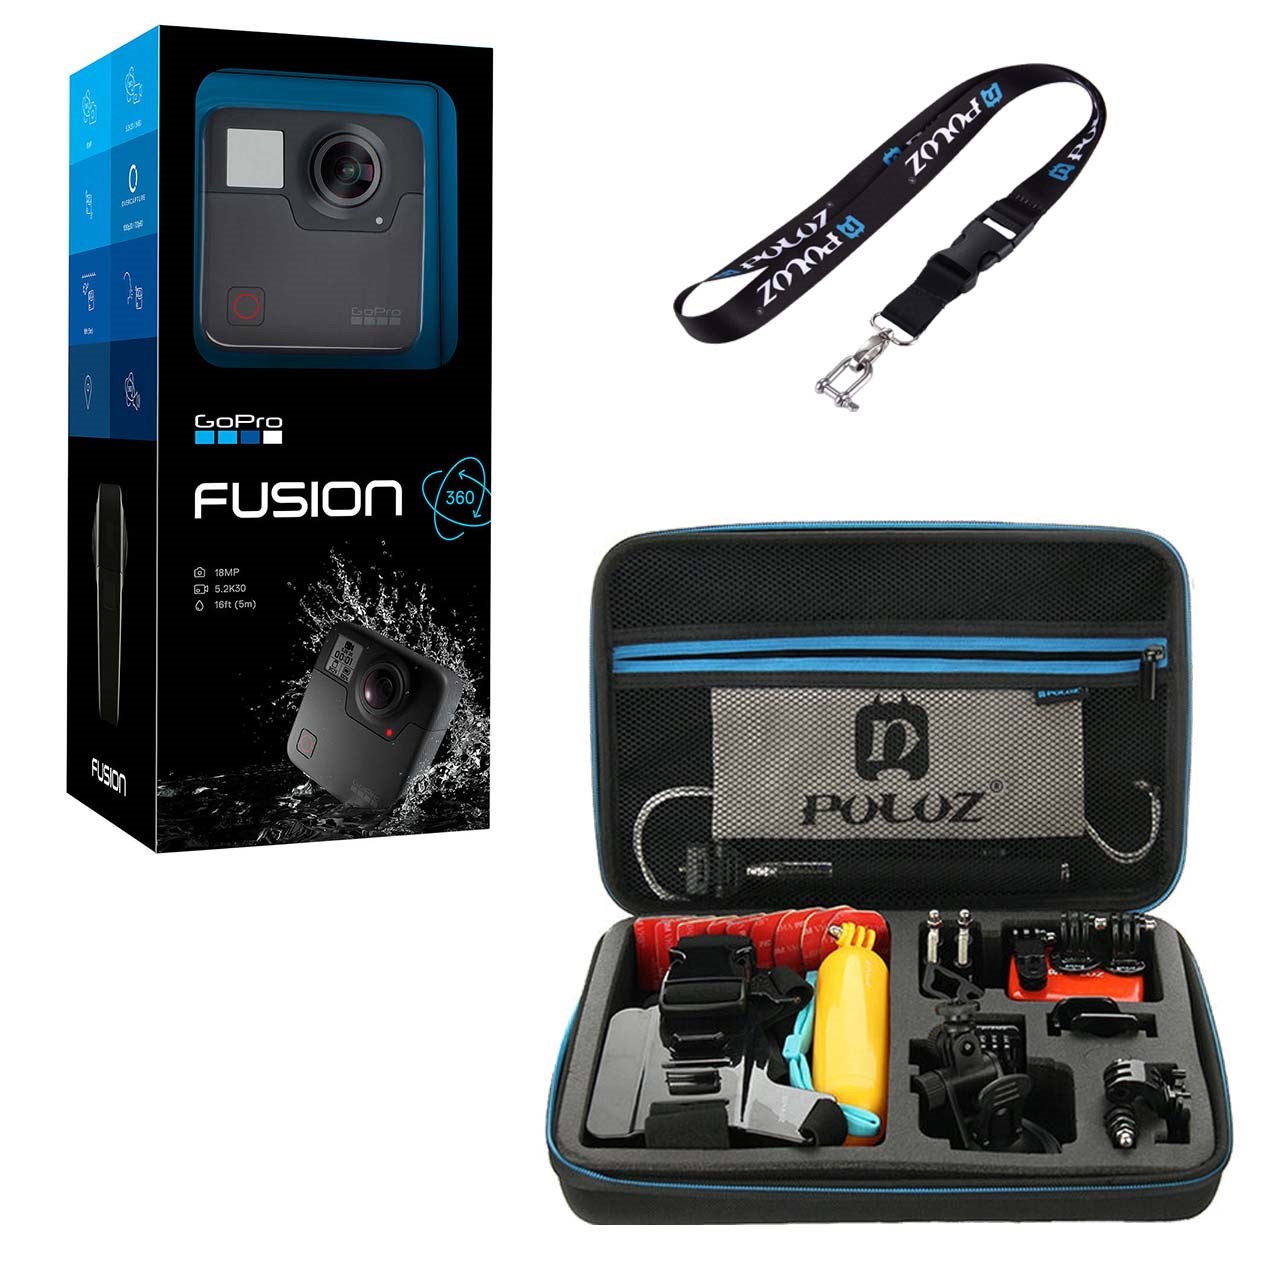 دوربین فیلم برداری ورزشی گوپرو مدل Fusion همراه با کیف و بند آویز پلوز